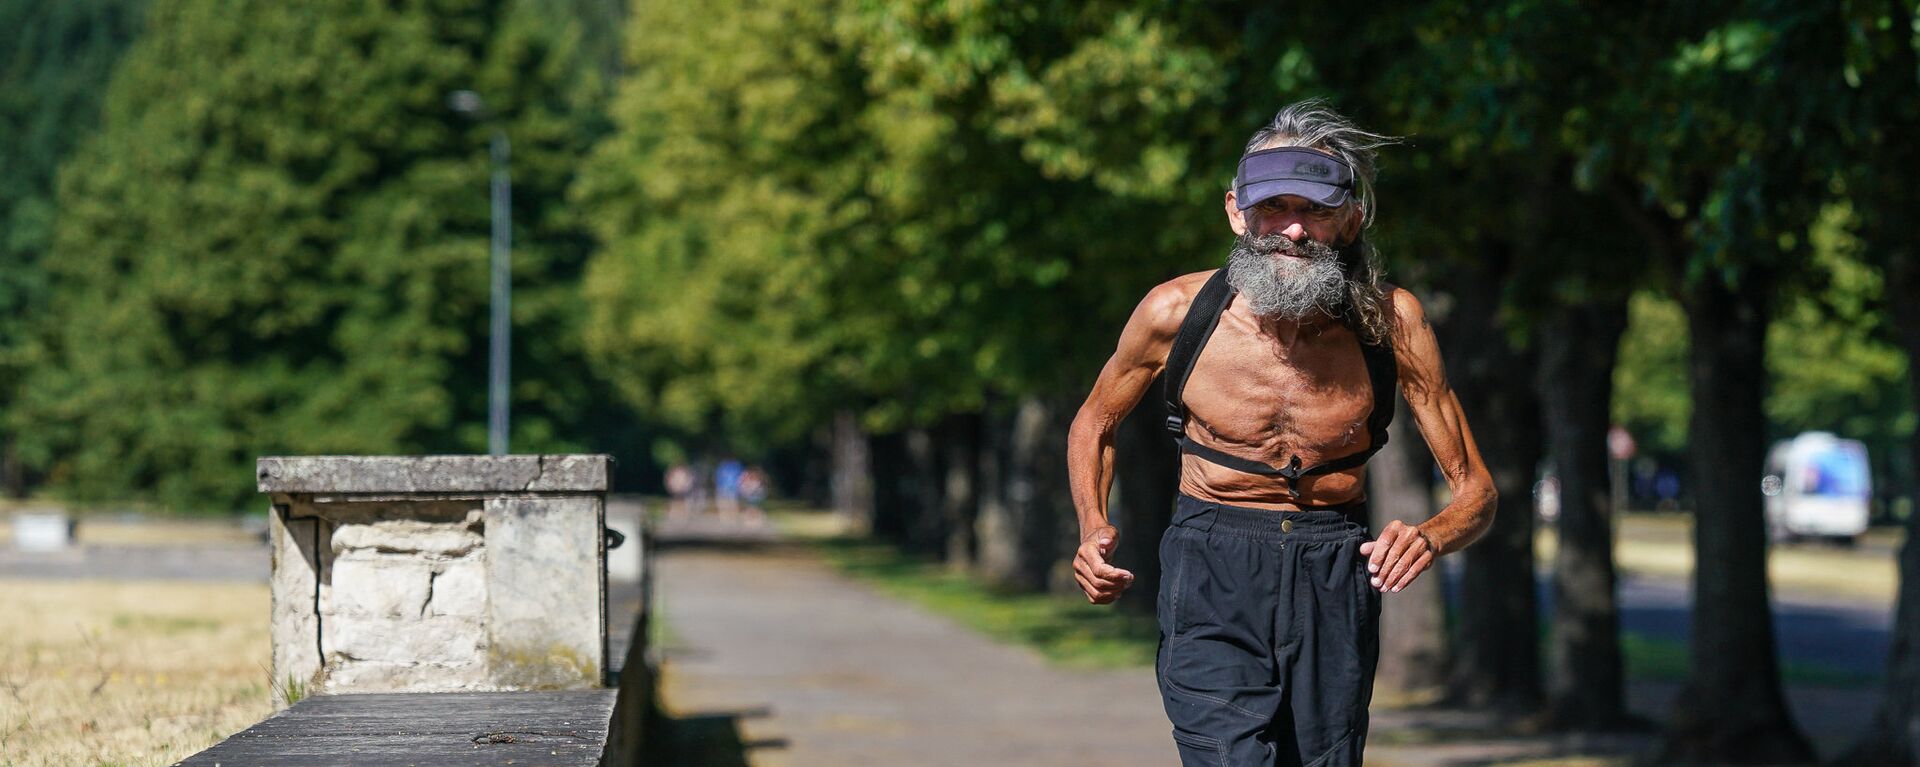 Пожилой человек бежит по парку - Sputnik Латвия, 1920, 07.04.2021